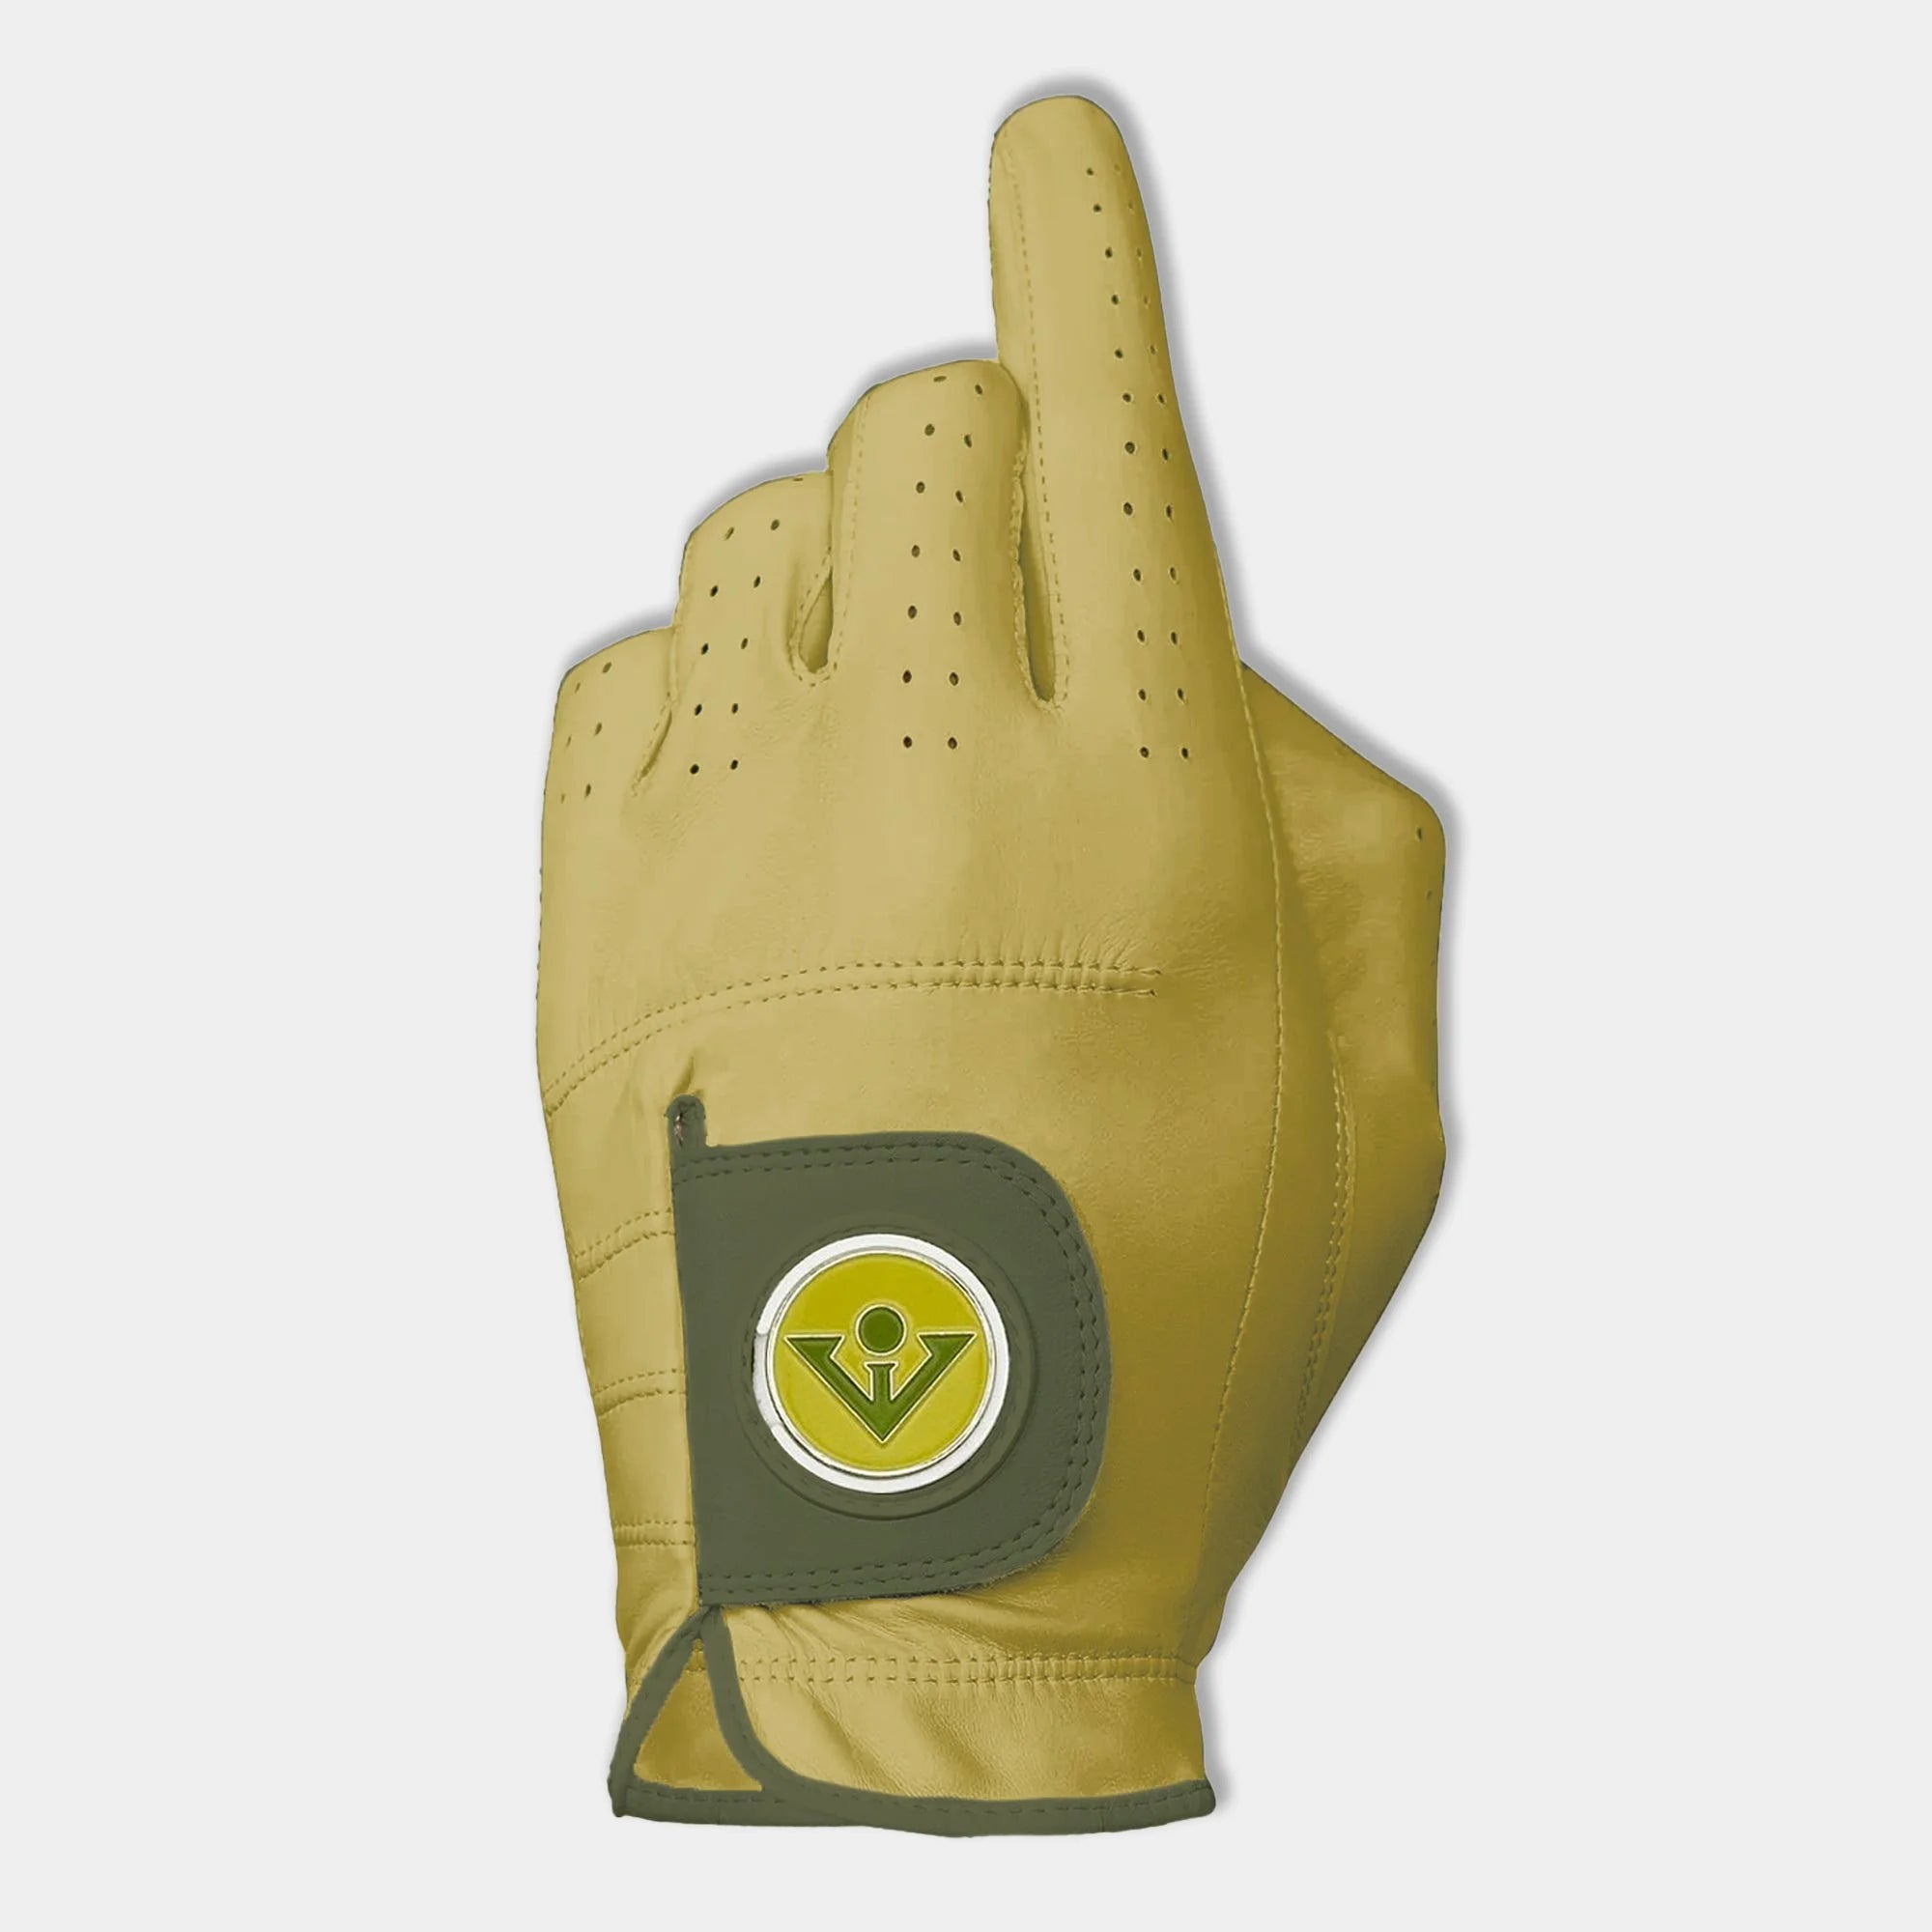 Men's yellow golf glove by VivanTee Golf.